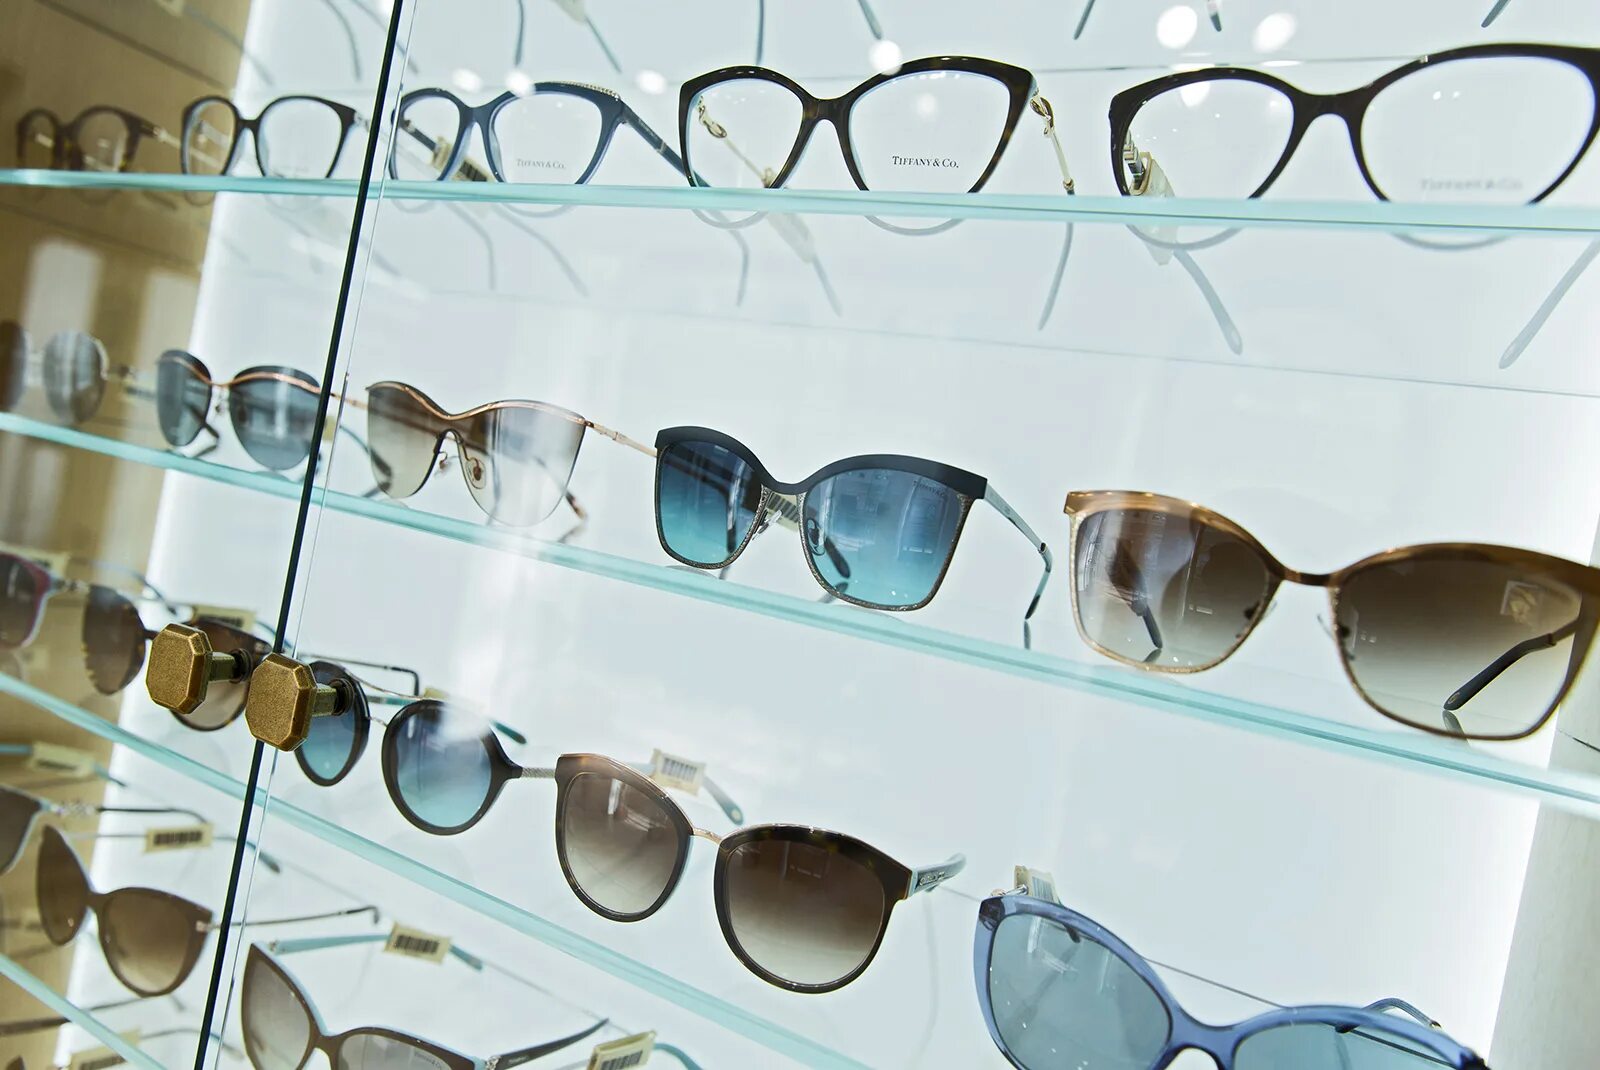 Где покупать солнцезащитные очки. ГУМ очки магазин. Витрина для солнечных очков. Ассортимент солнцезащитных очков. Солнцезащитные очки на витрине.